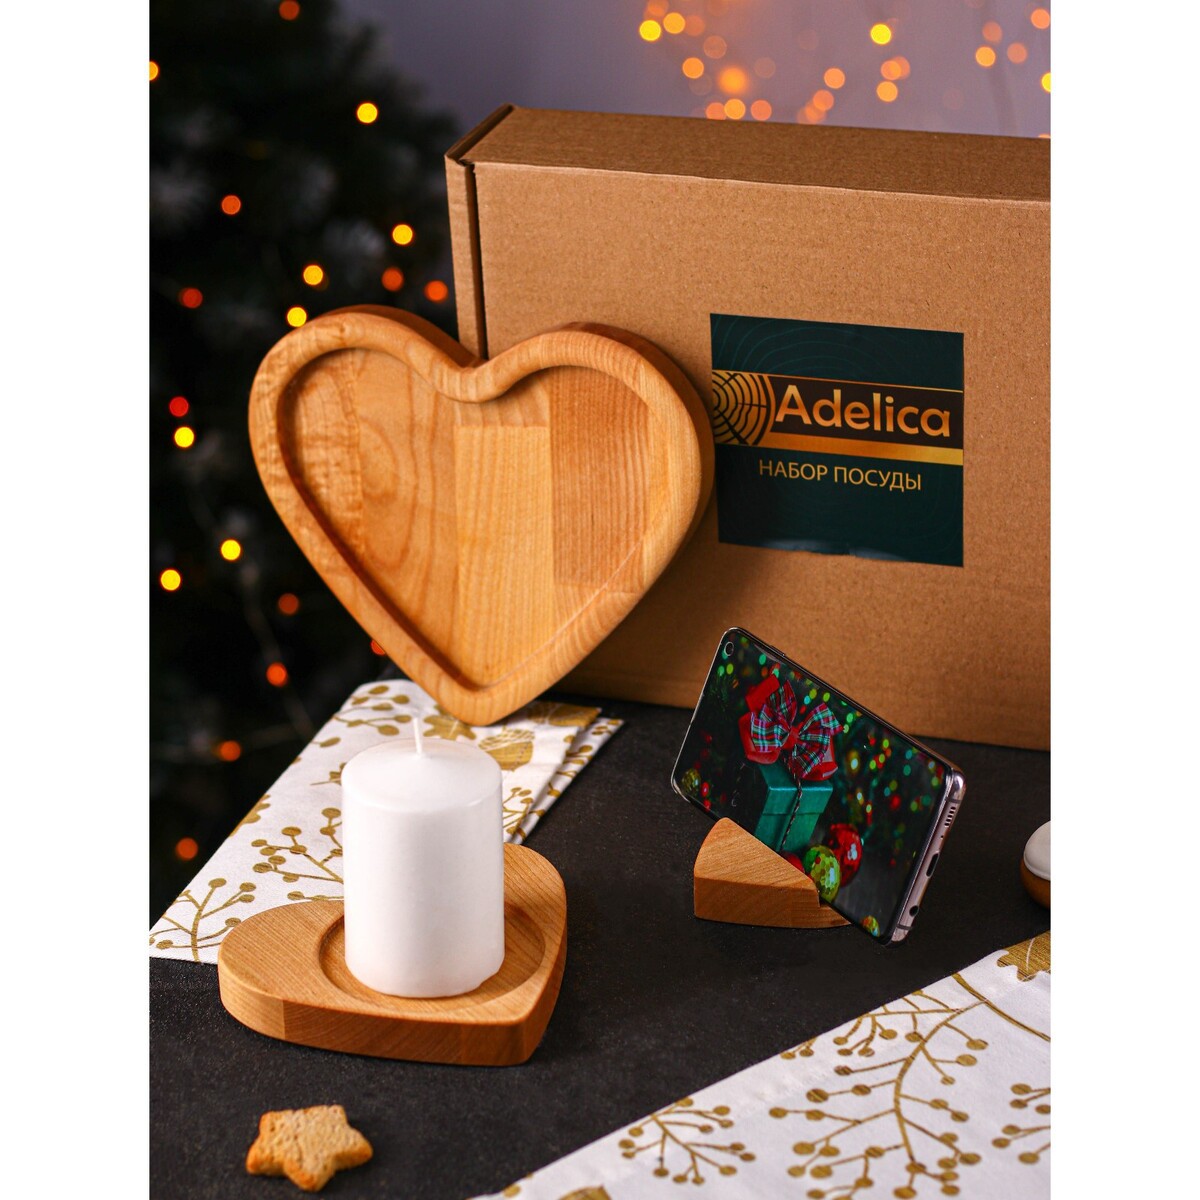 Подарочный набор деревянной посуды adelica подарочный набор деревянной посуды adelica блюдо для подачи к пиву открывашка для бутылок 25×22×1 8 см 12×5×1 8 см береза